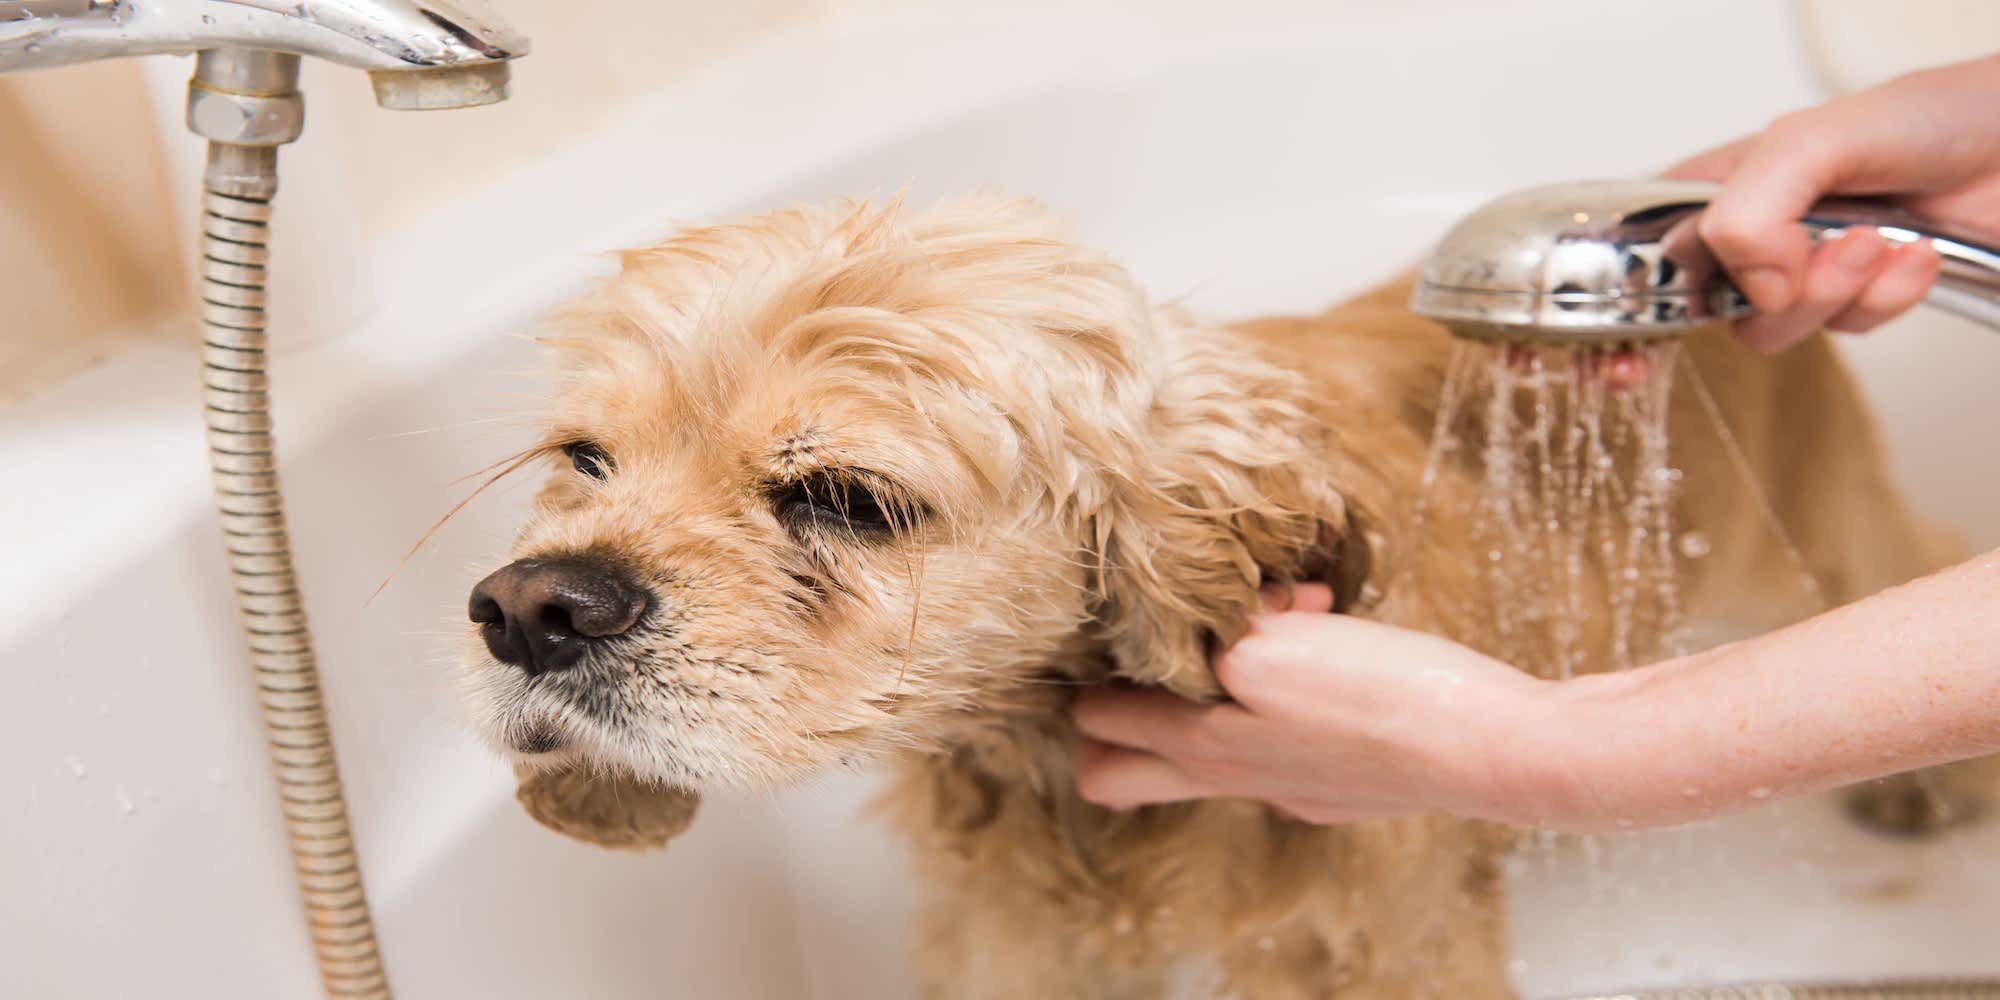 bathing your dog image